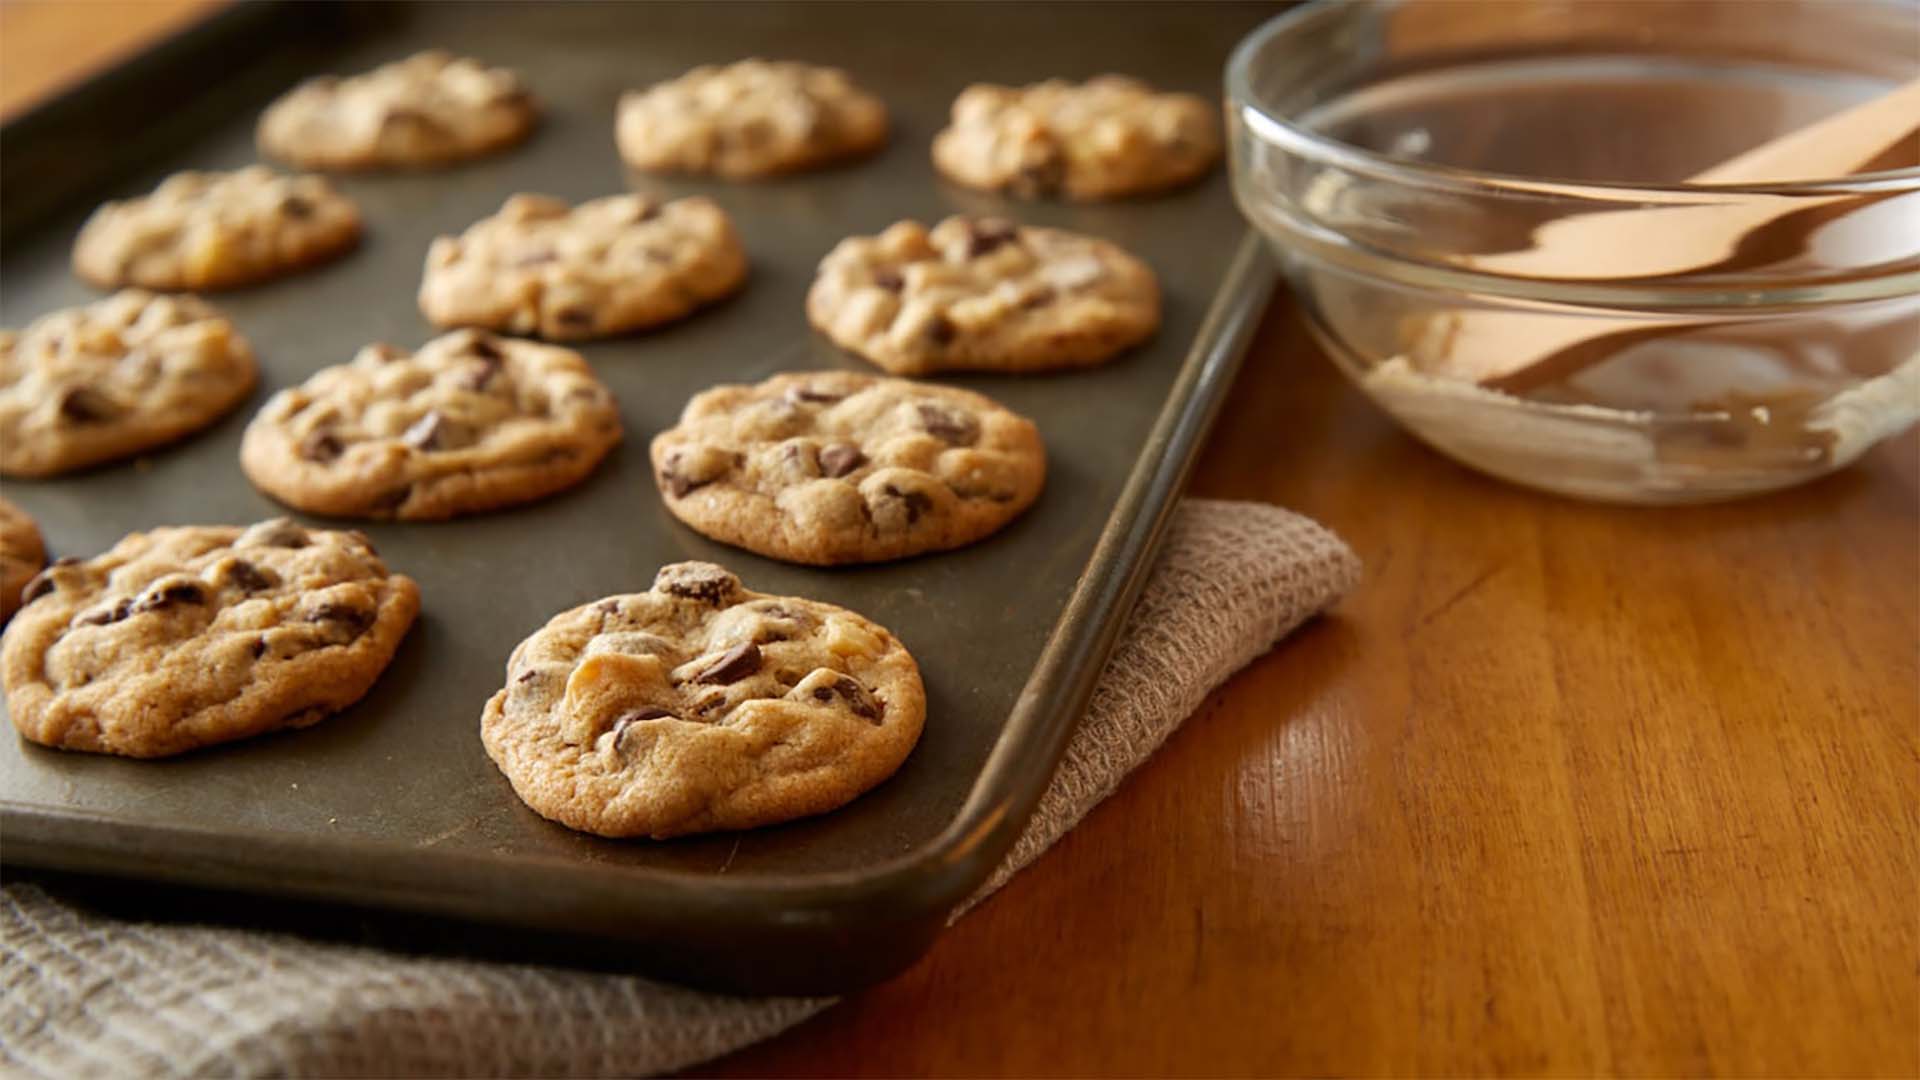 hersheys chipits dark chocolate and macadamia cookies recipe